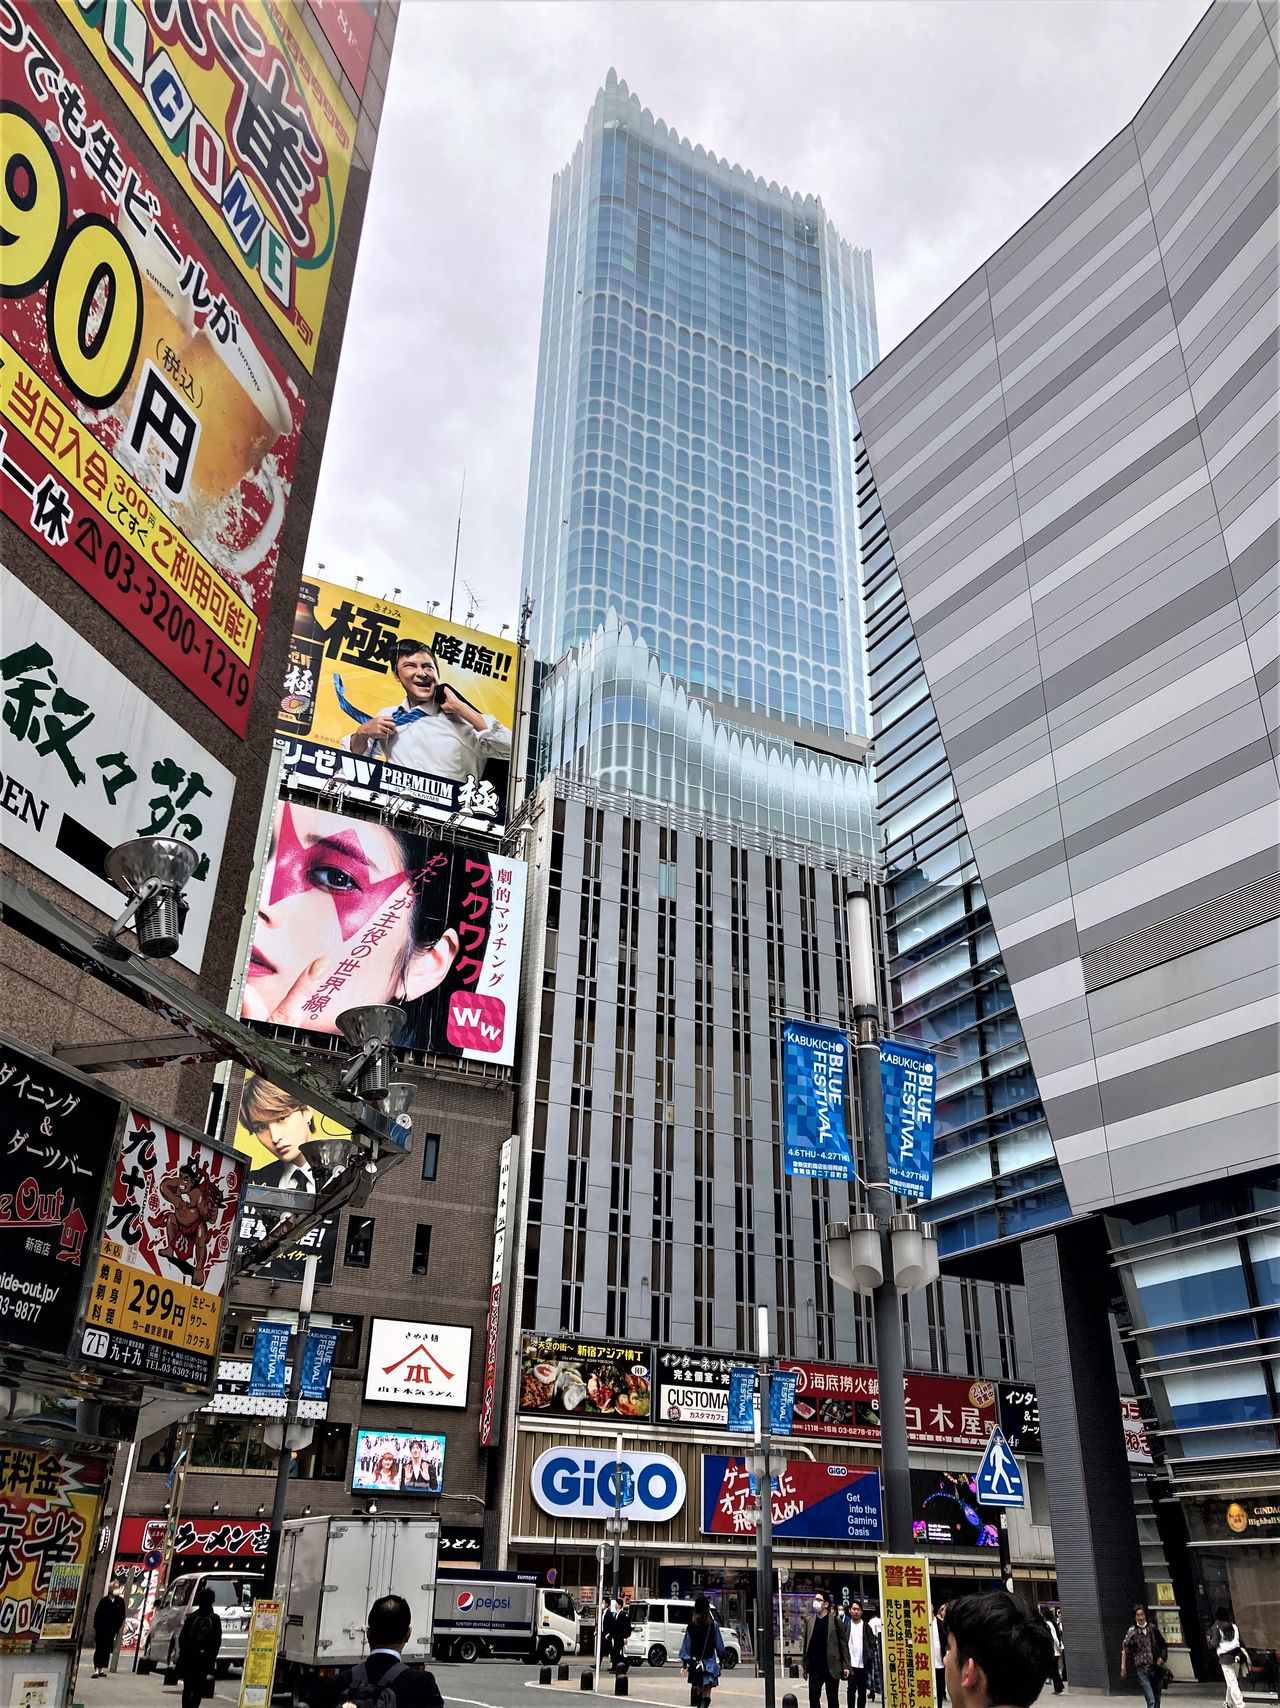 高聳於商住混雜的樓群中的「東急歌舞伎町塔」。從西武新宿站步行1分鐘，從JR新宿站步行7分鐘即可到達。另有機場公車站，直接可以往來於羽田和成田機場（nippon.com編輯部攝影）